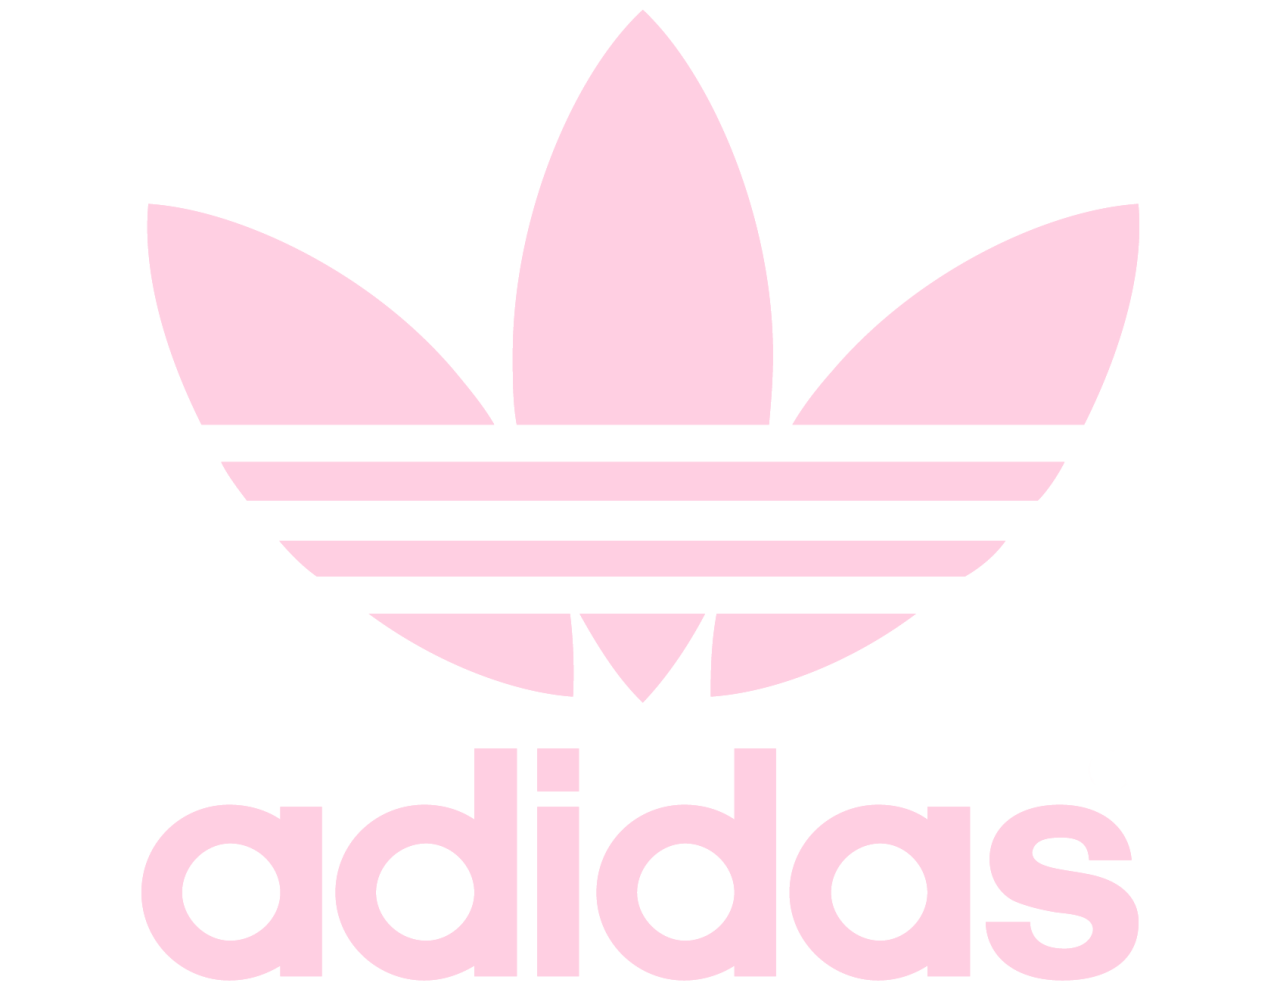 Adidas Logo SVG, Adidas PNG, Adidas Logo Transparent, Adidas Inspire ...